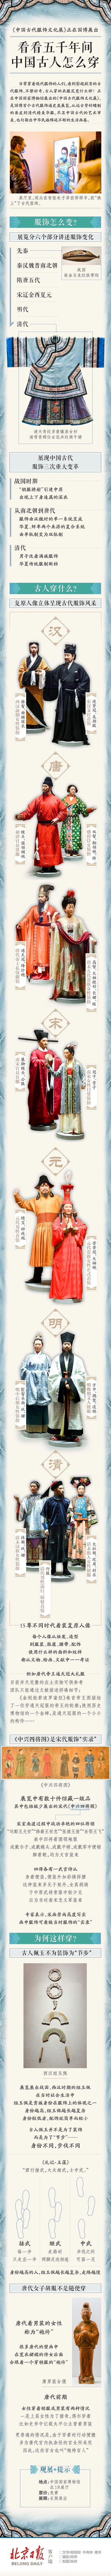 中国历史朝代服饰,中国历史朝代服饰顺序表(1)